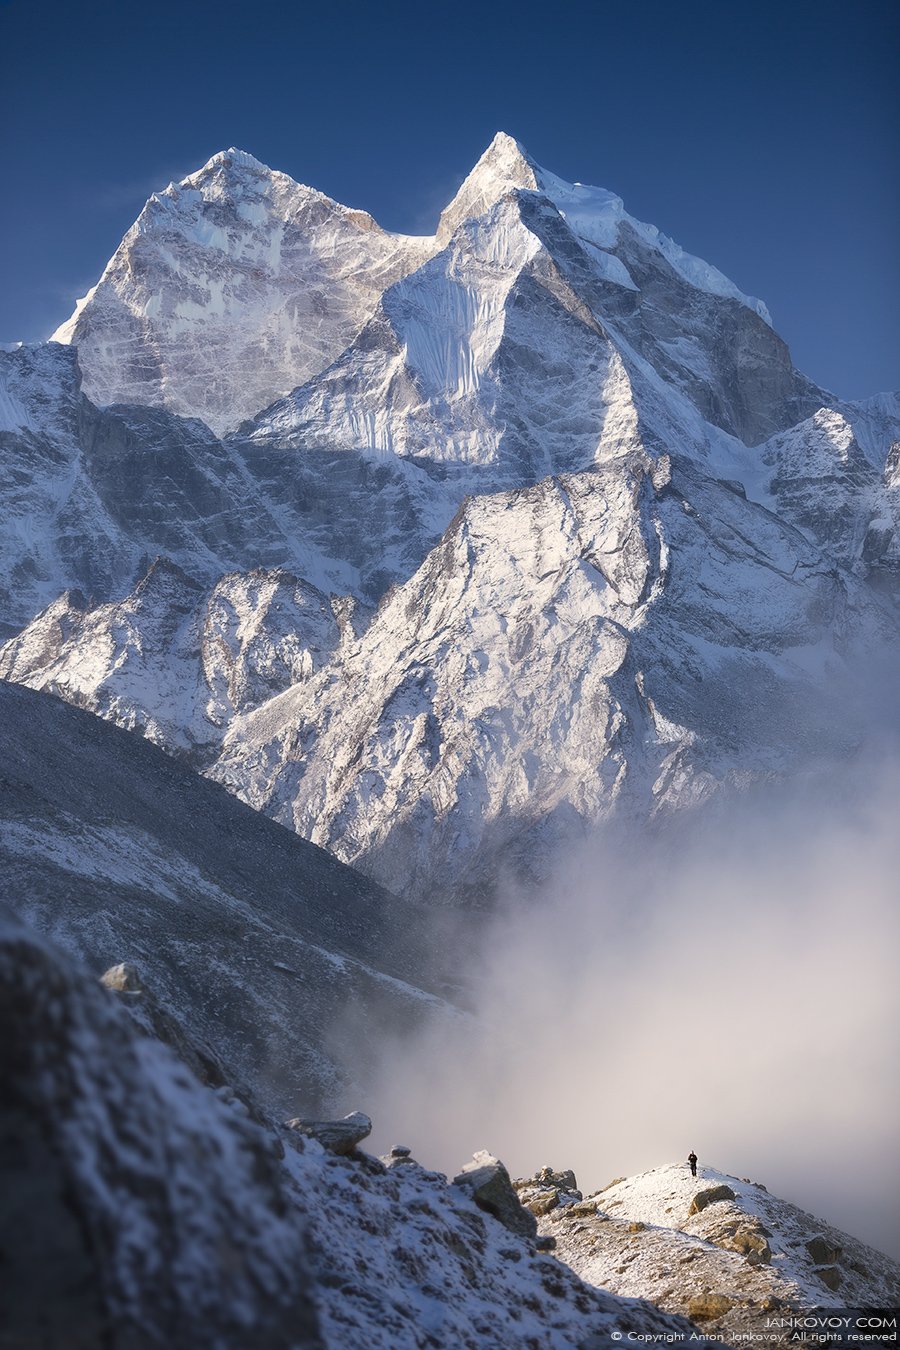 Непал, Эверест, Кантега, Гималаи, горы, треккинг, путешествия, пейзаж, снег, природа, Антон Янковой (www.photo-travel.com)